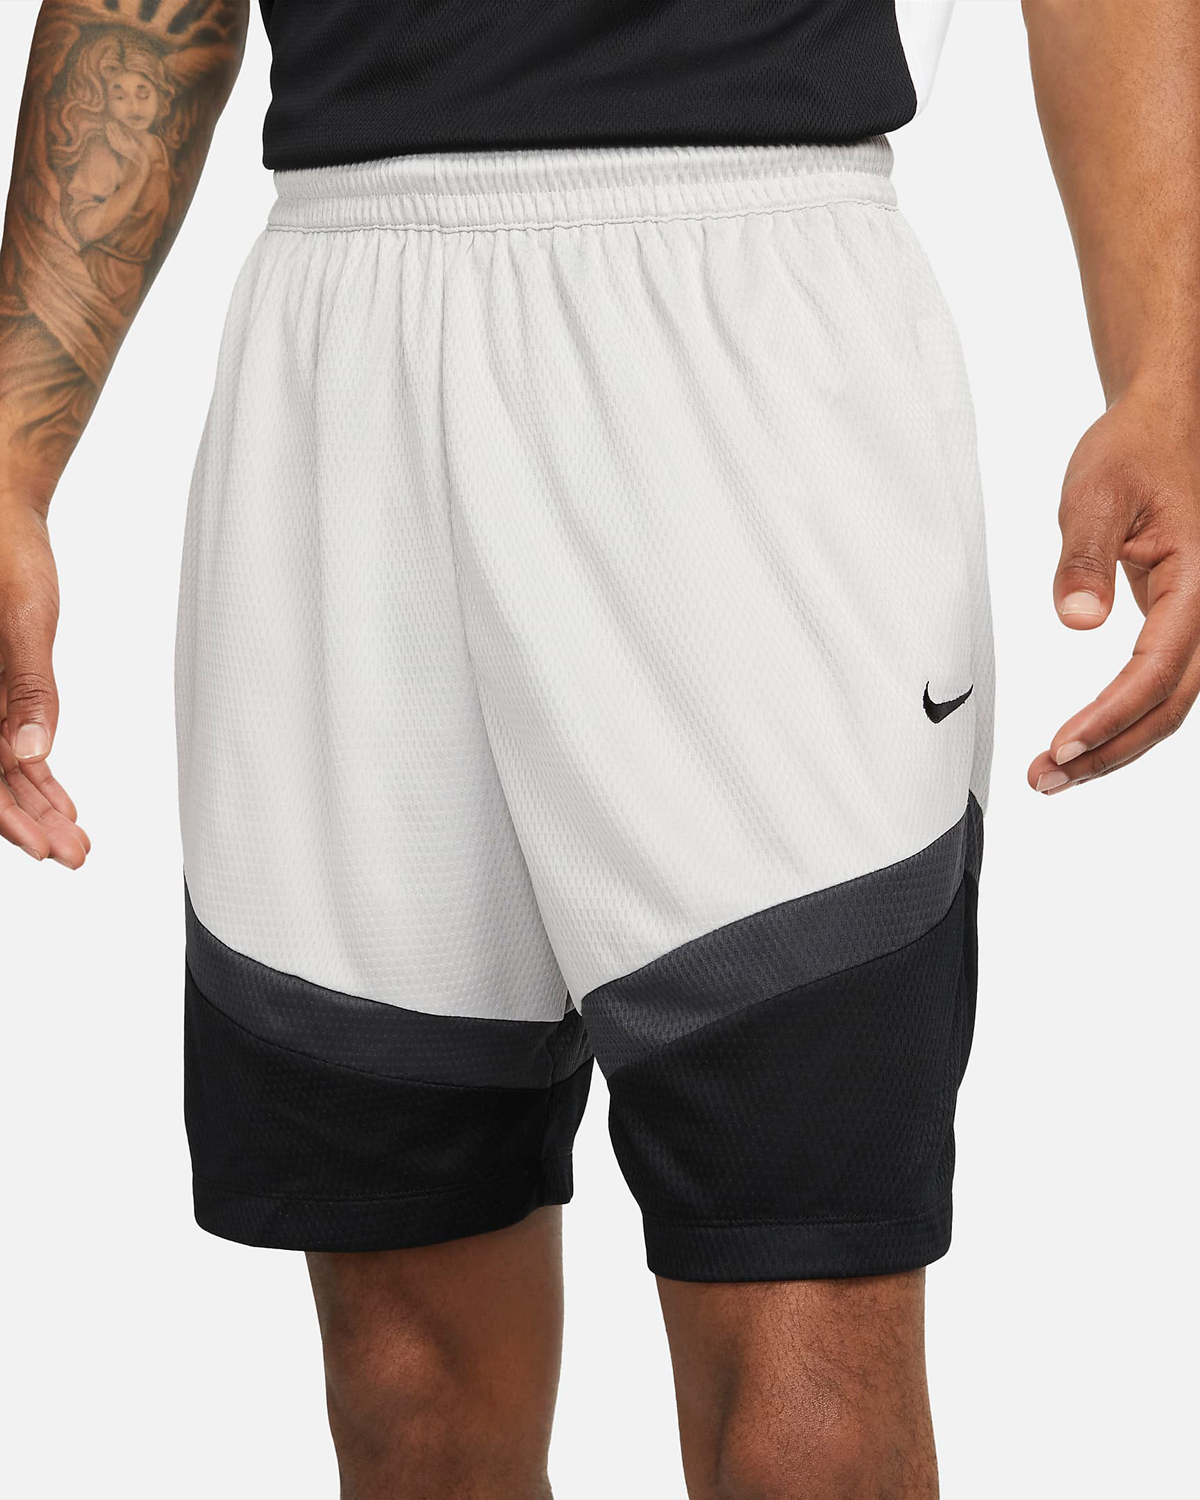 Nike Icon Basketball Shorts Light Iron Ore Black